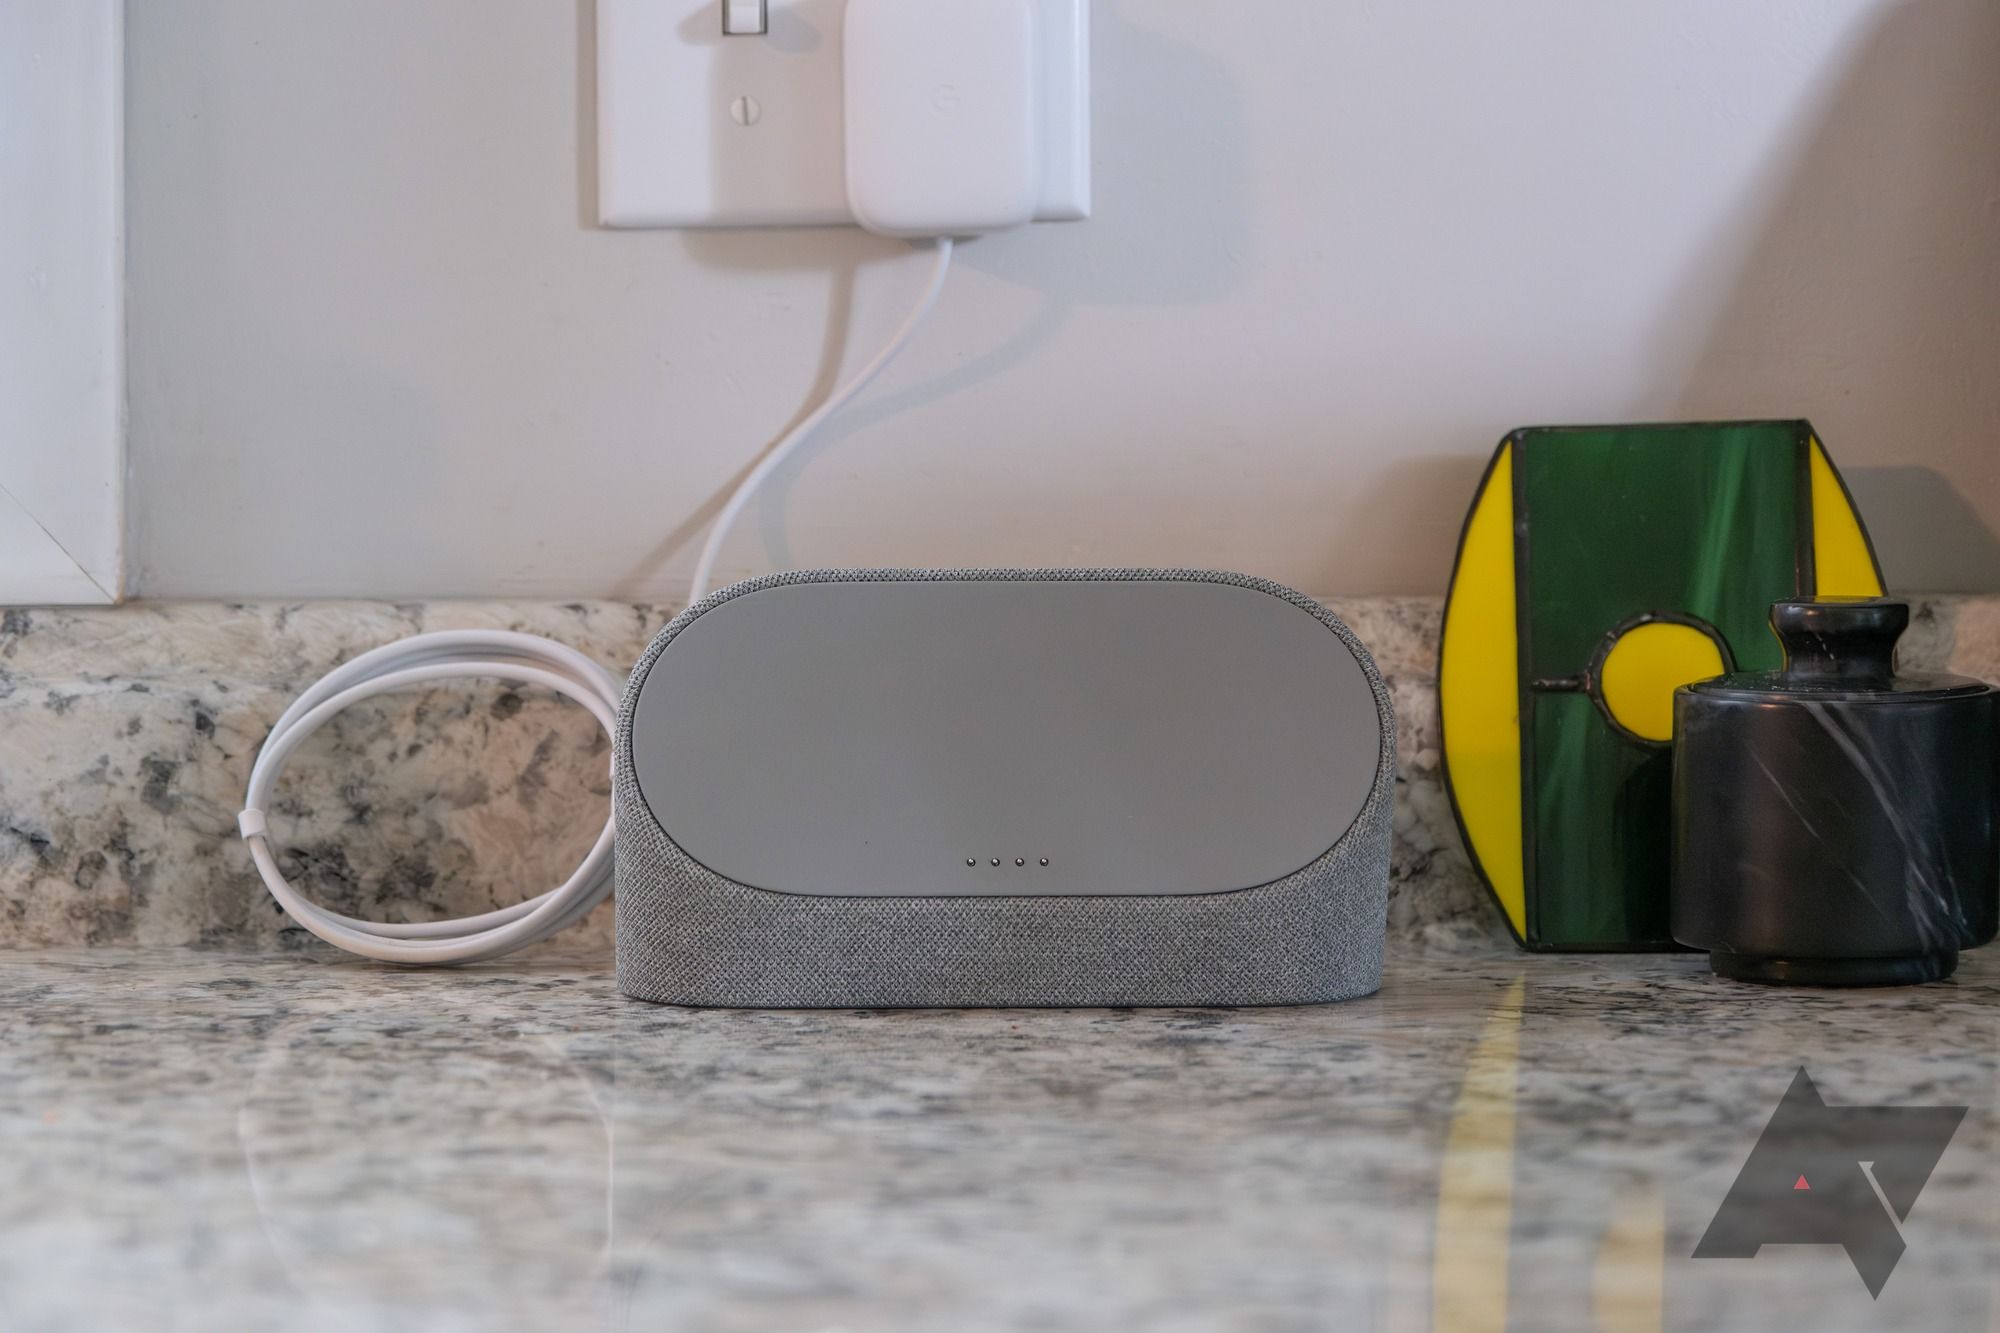 Base de alto-falante de carregamento do Pixel Tablet em uma bancada de cozinha